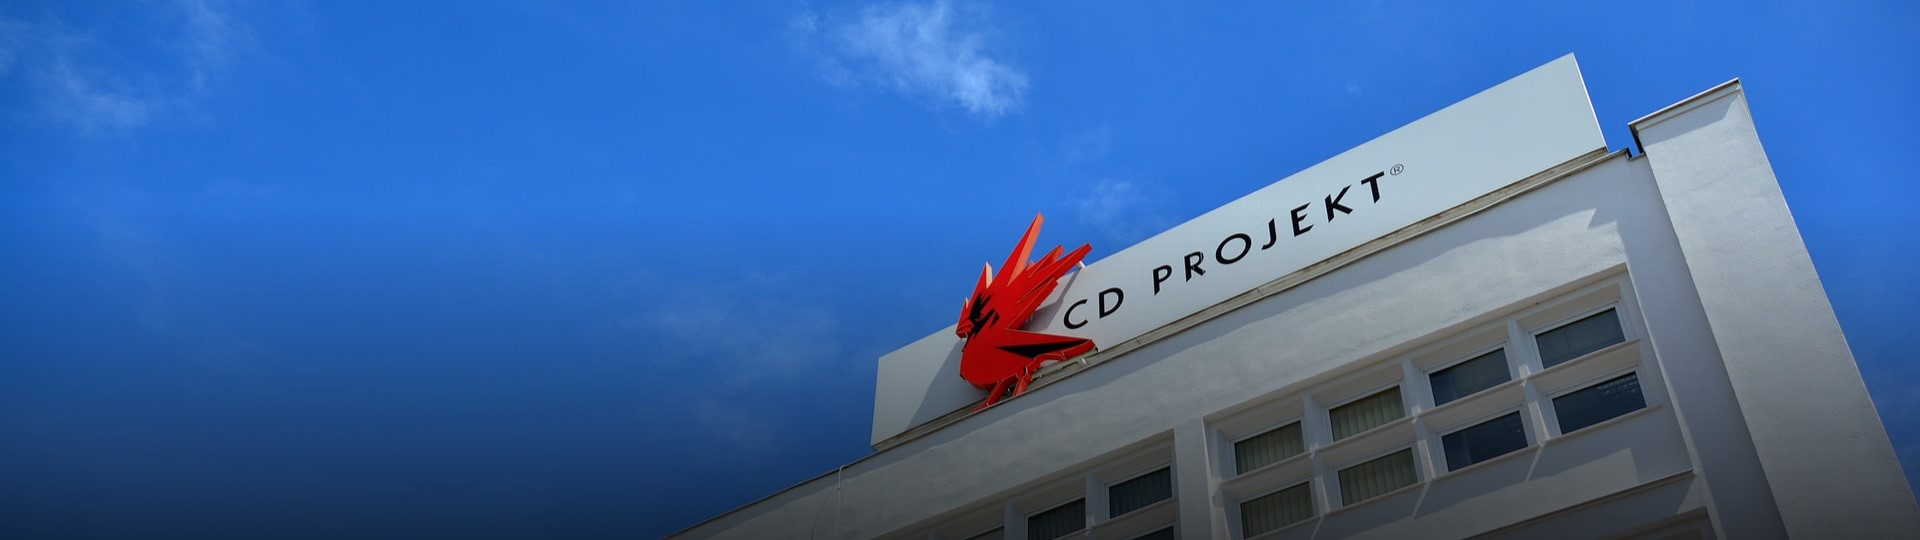 Hackeři vydírají společnost CD Projekt. Její akcie prudce klesly